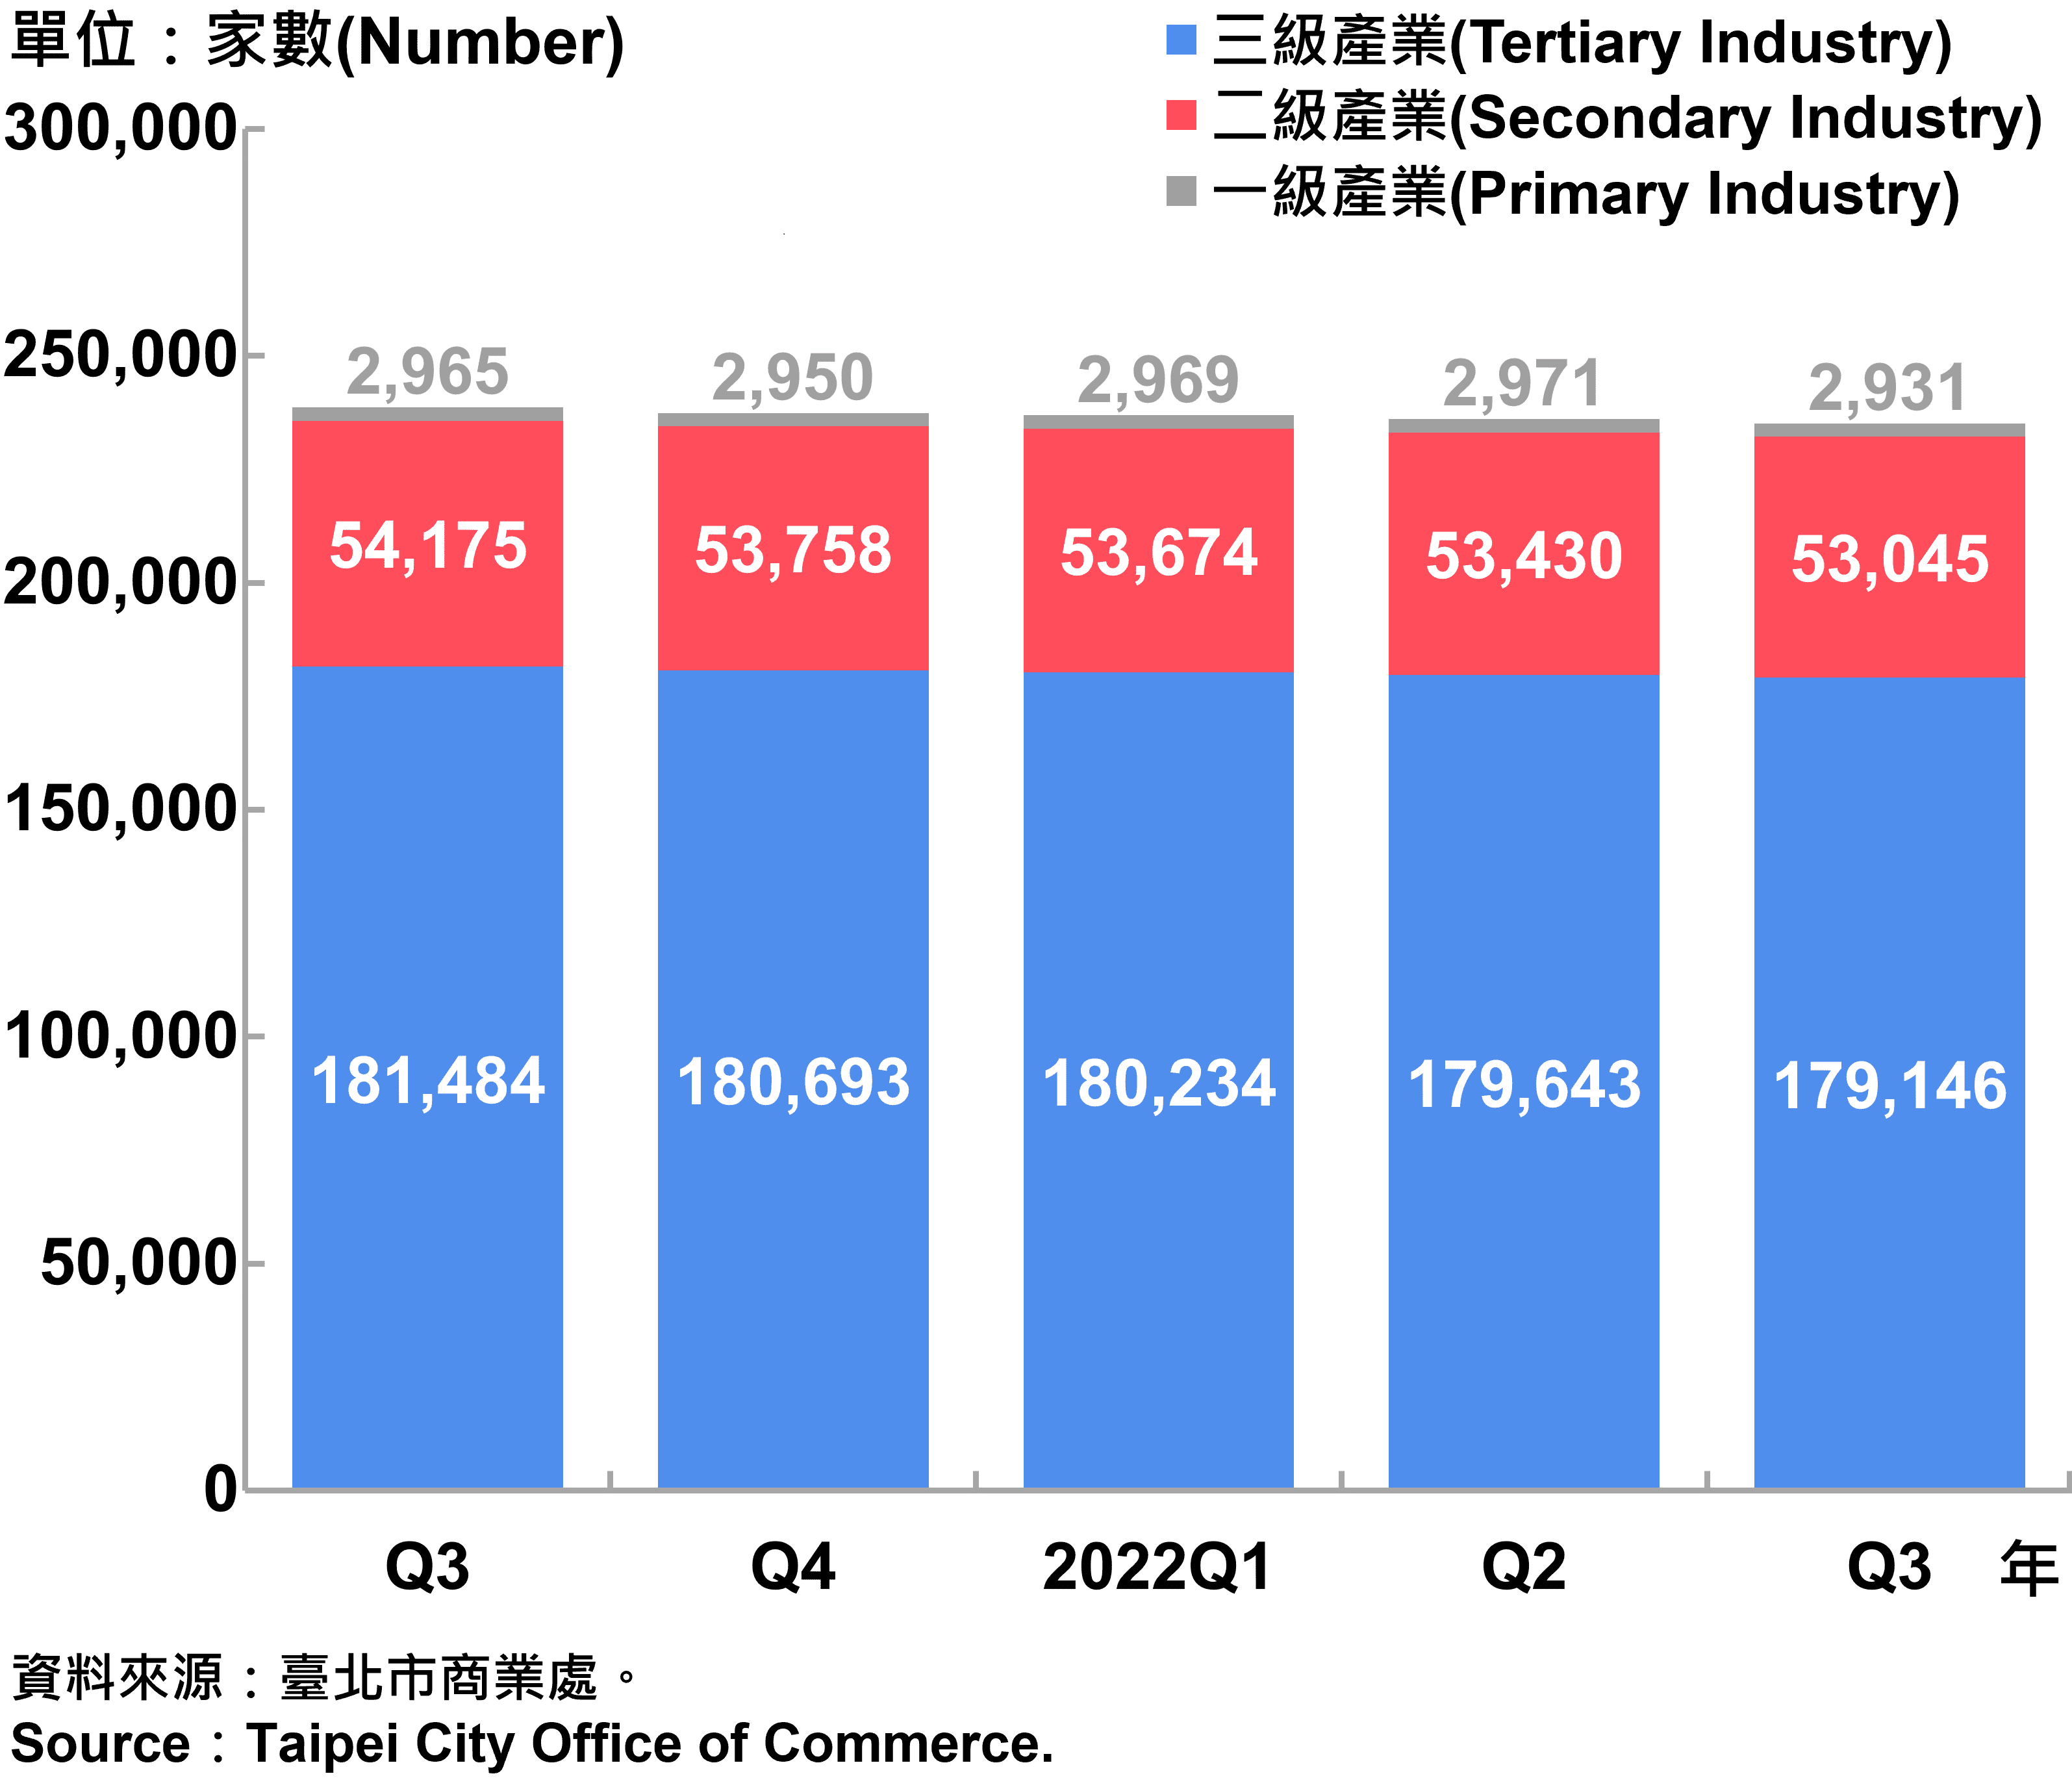 臺北市一二三級產業登記家數—2022Q3 Number of Primary , Secondary and Tertiary Industry in Taipei City—2022Q3